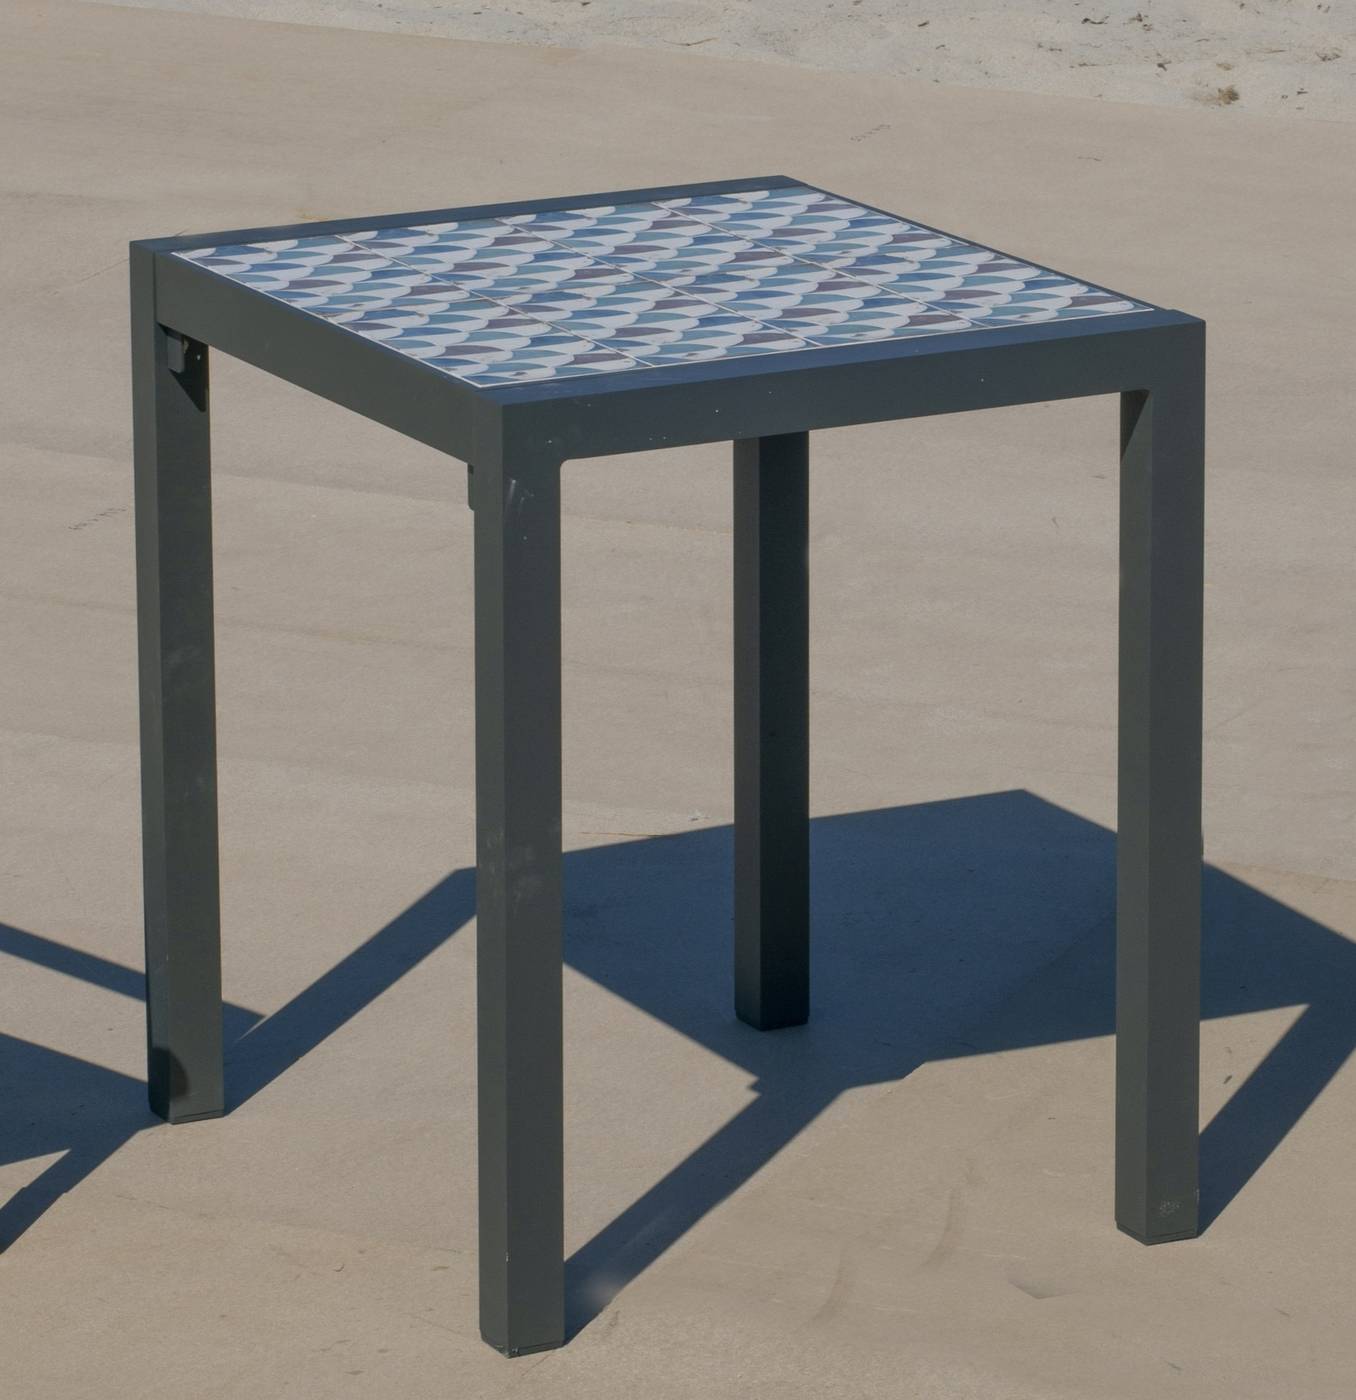 Set Góndola-60-2 Córcega - Conjunto de aluminio color antracita: Mesa cuadrada con tablero mosaico de 60 cm + 2 sillones sillones de textilen.